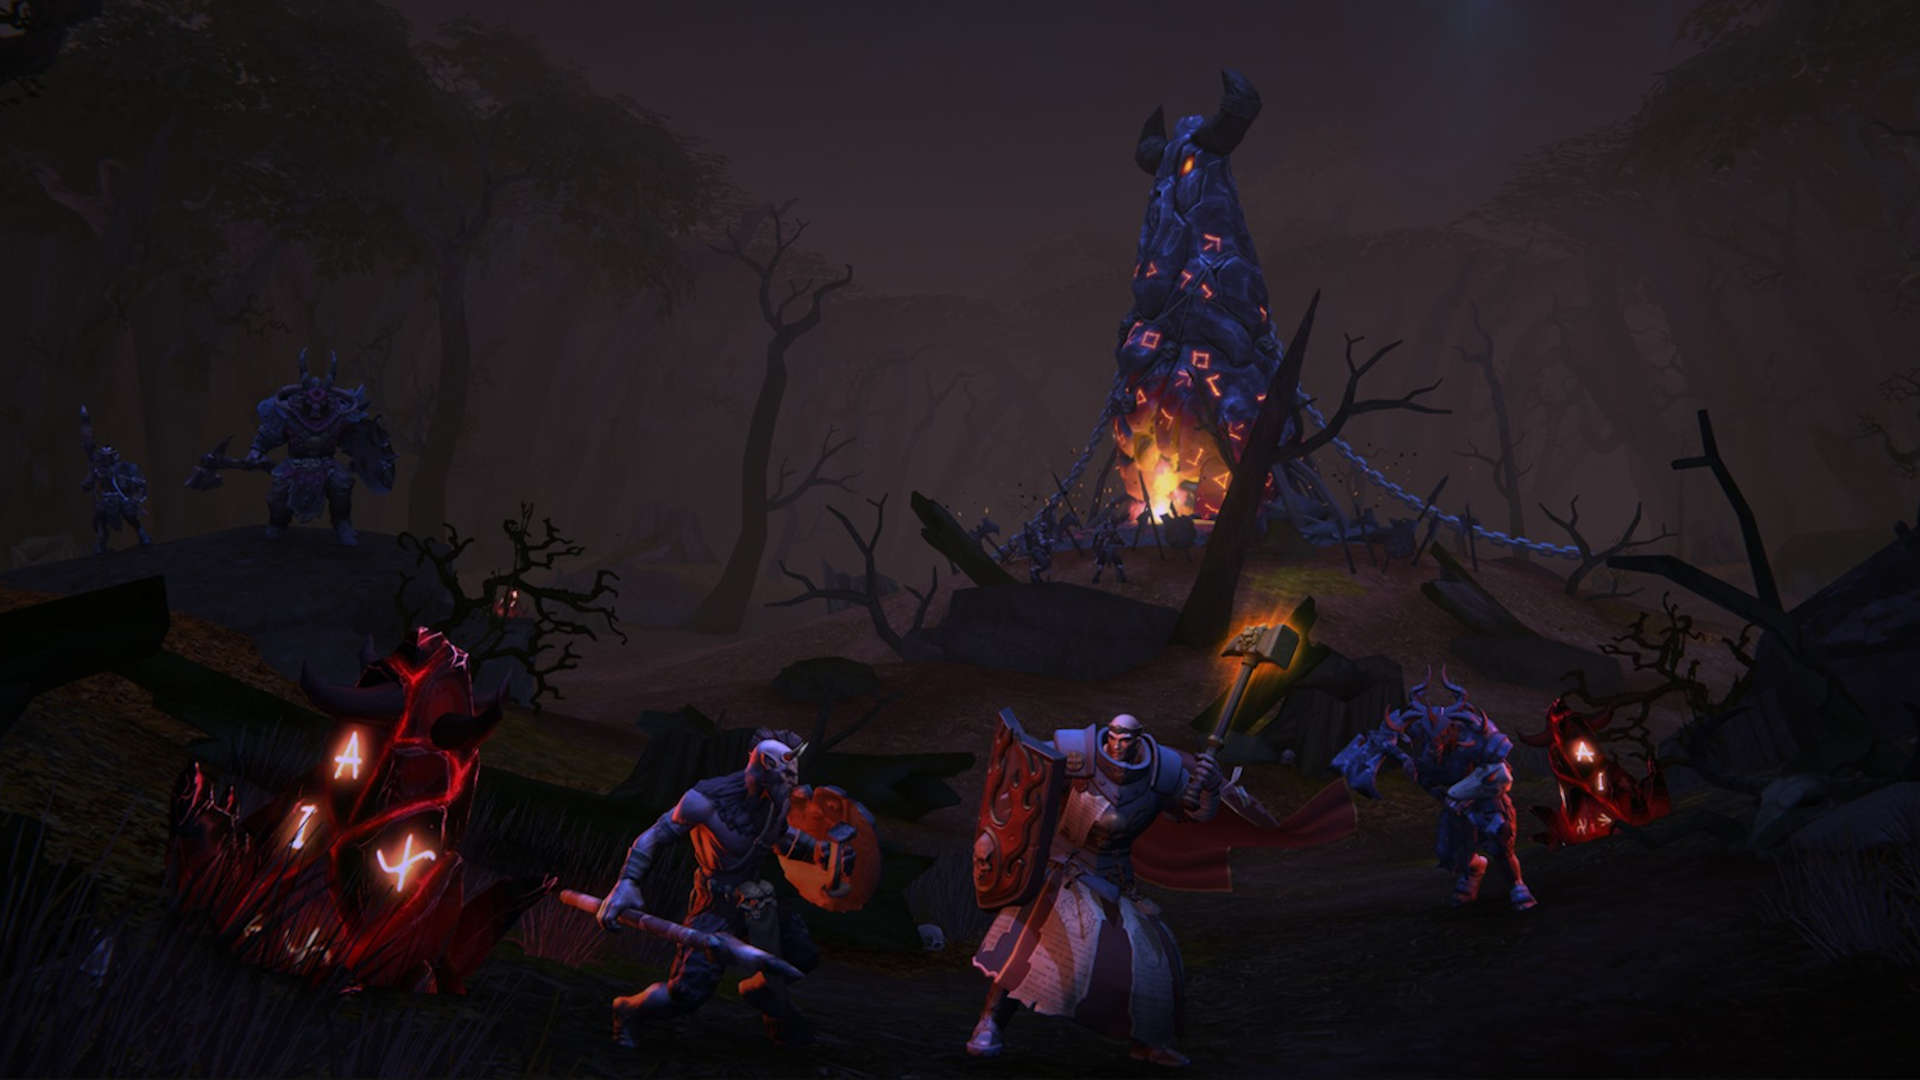 Bästa mobila MMORPG: Warhammer Odyssey. Bilden visar en krigarepräst som kämpar mot fiender med en hammare och sköld